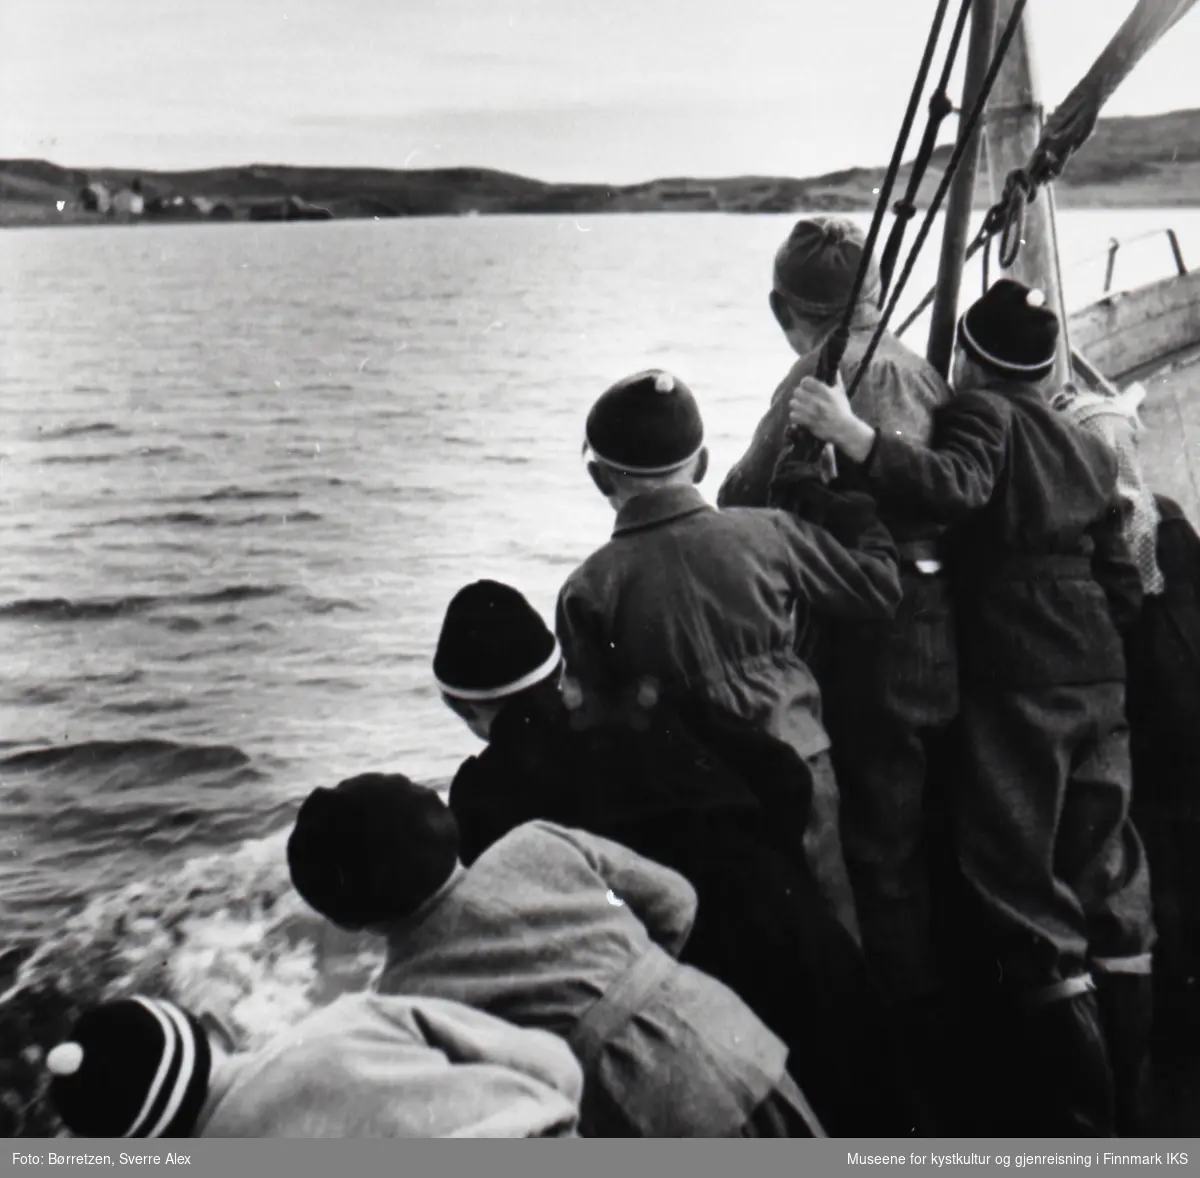 Barn ombord på skoleskøyta på vei til internatet i Repvåg. Båten nærmer seg Repvåg, som allerede kan sees i bakgrunnen. Høsten 1952.